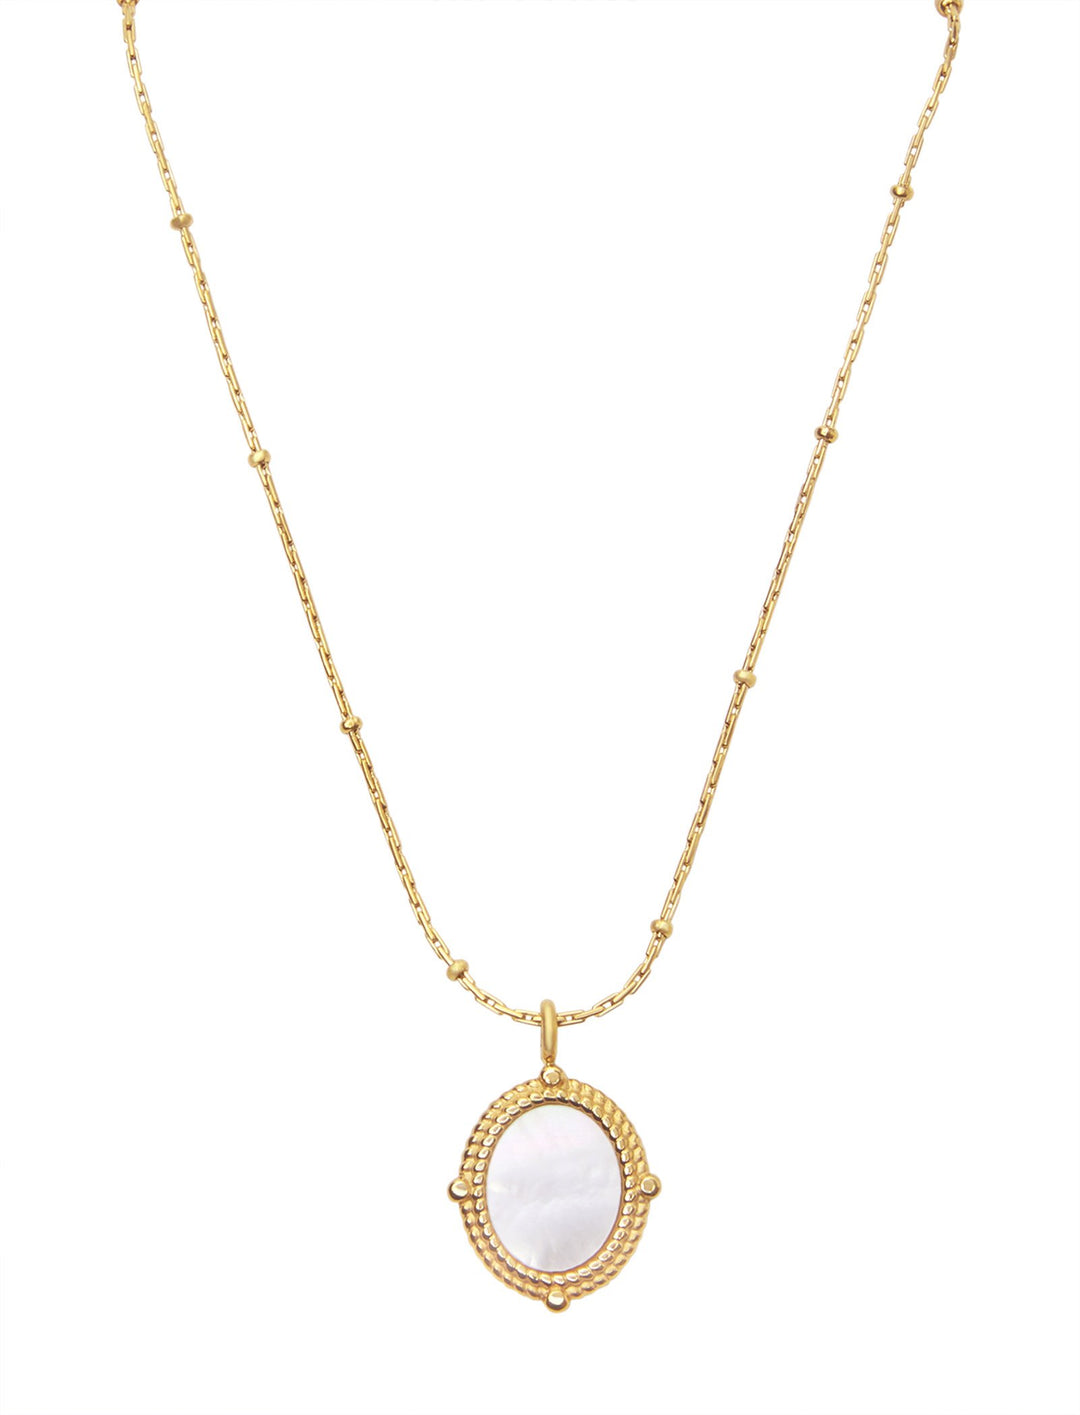 Allegra Necklace- Gold